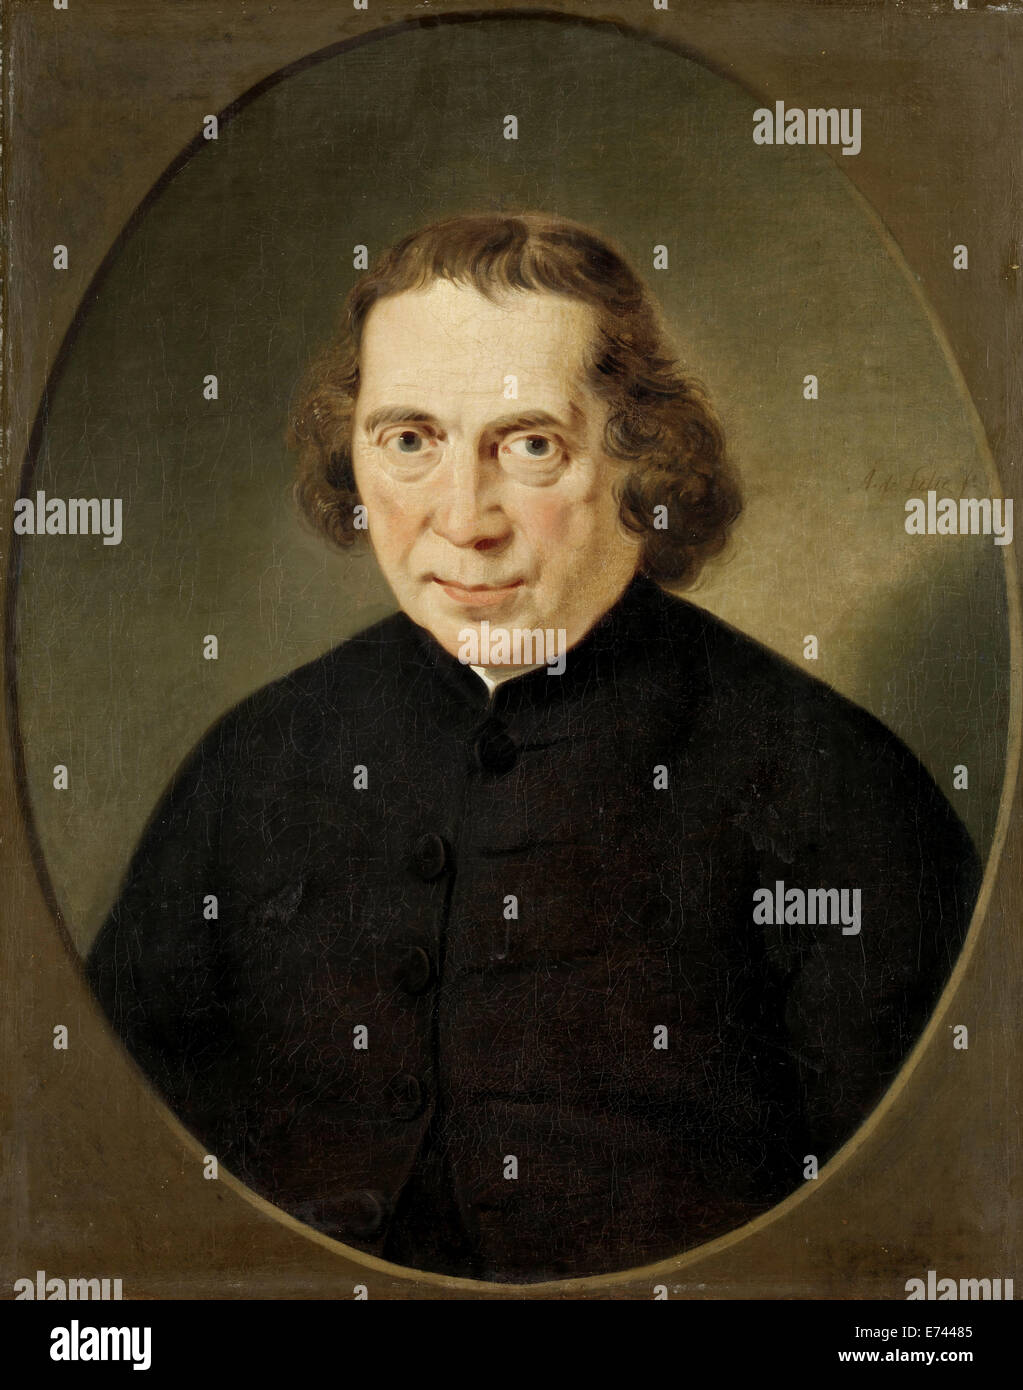 Portrait de Jan Nieuwenhuyzen - Par Adriaan de Lelie, 1780 - 1806 Banque D'Images